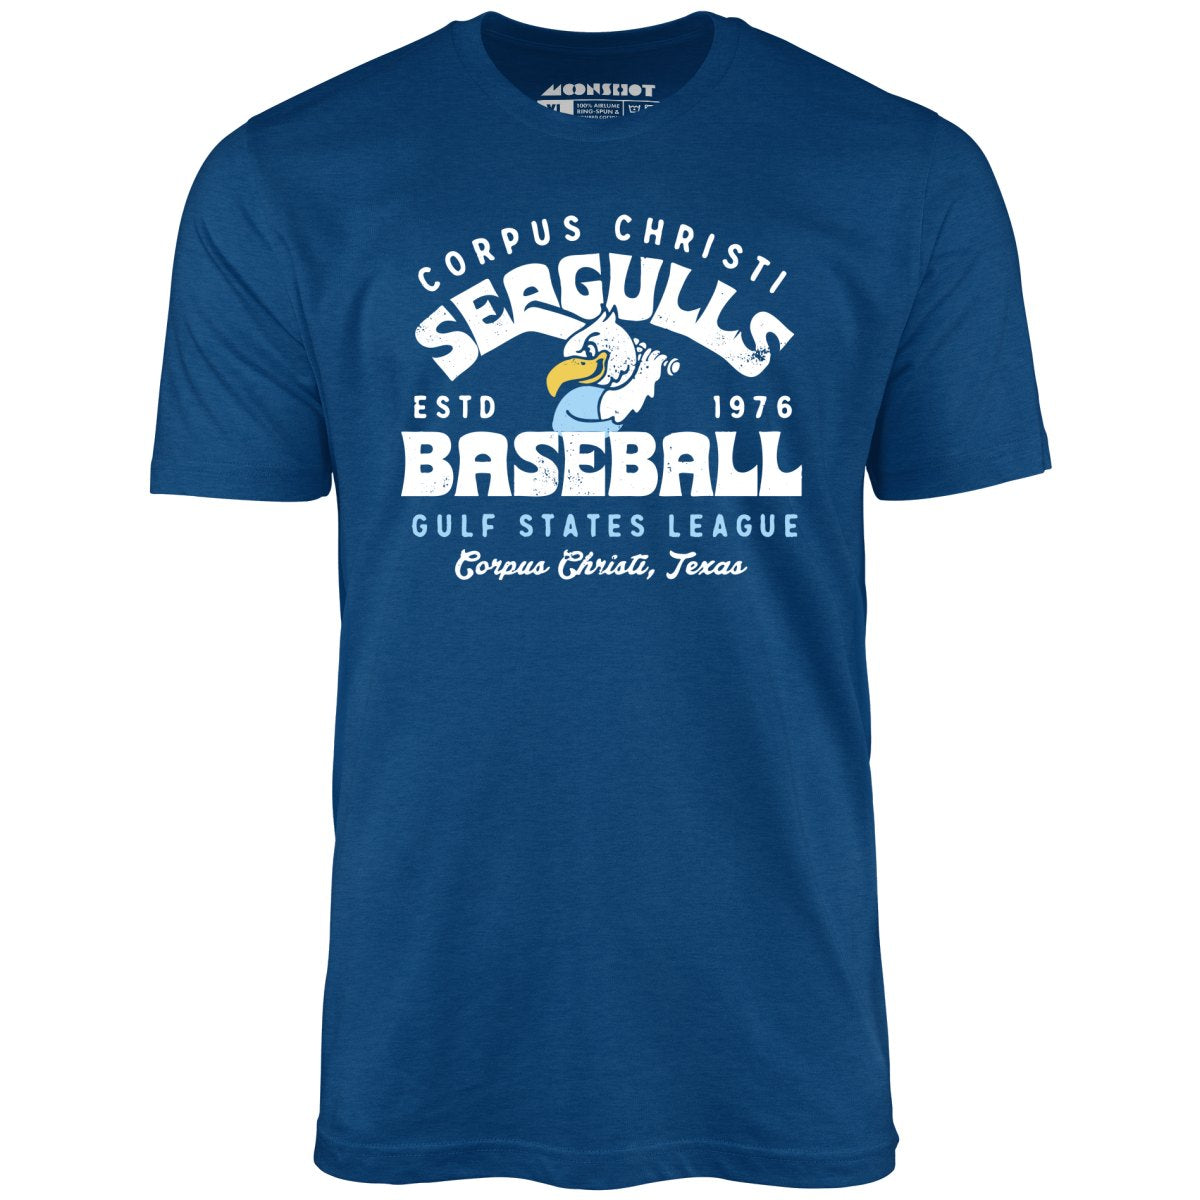 Corpus Christi Seagulls - Texas - Vintage Defunct Baseball Teams - Unisex T-Shirt